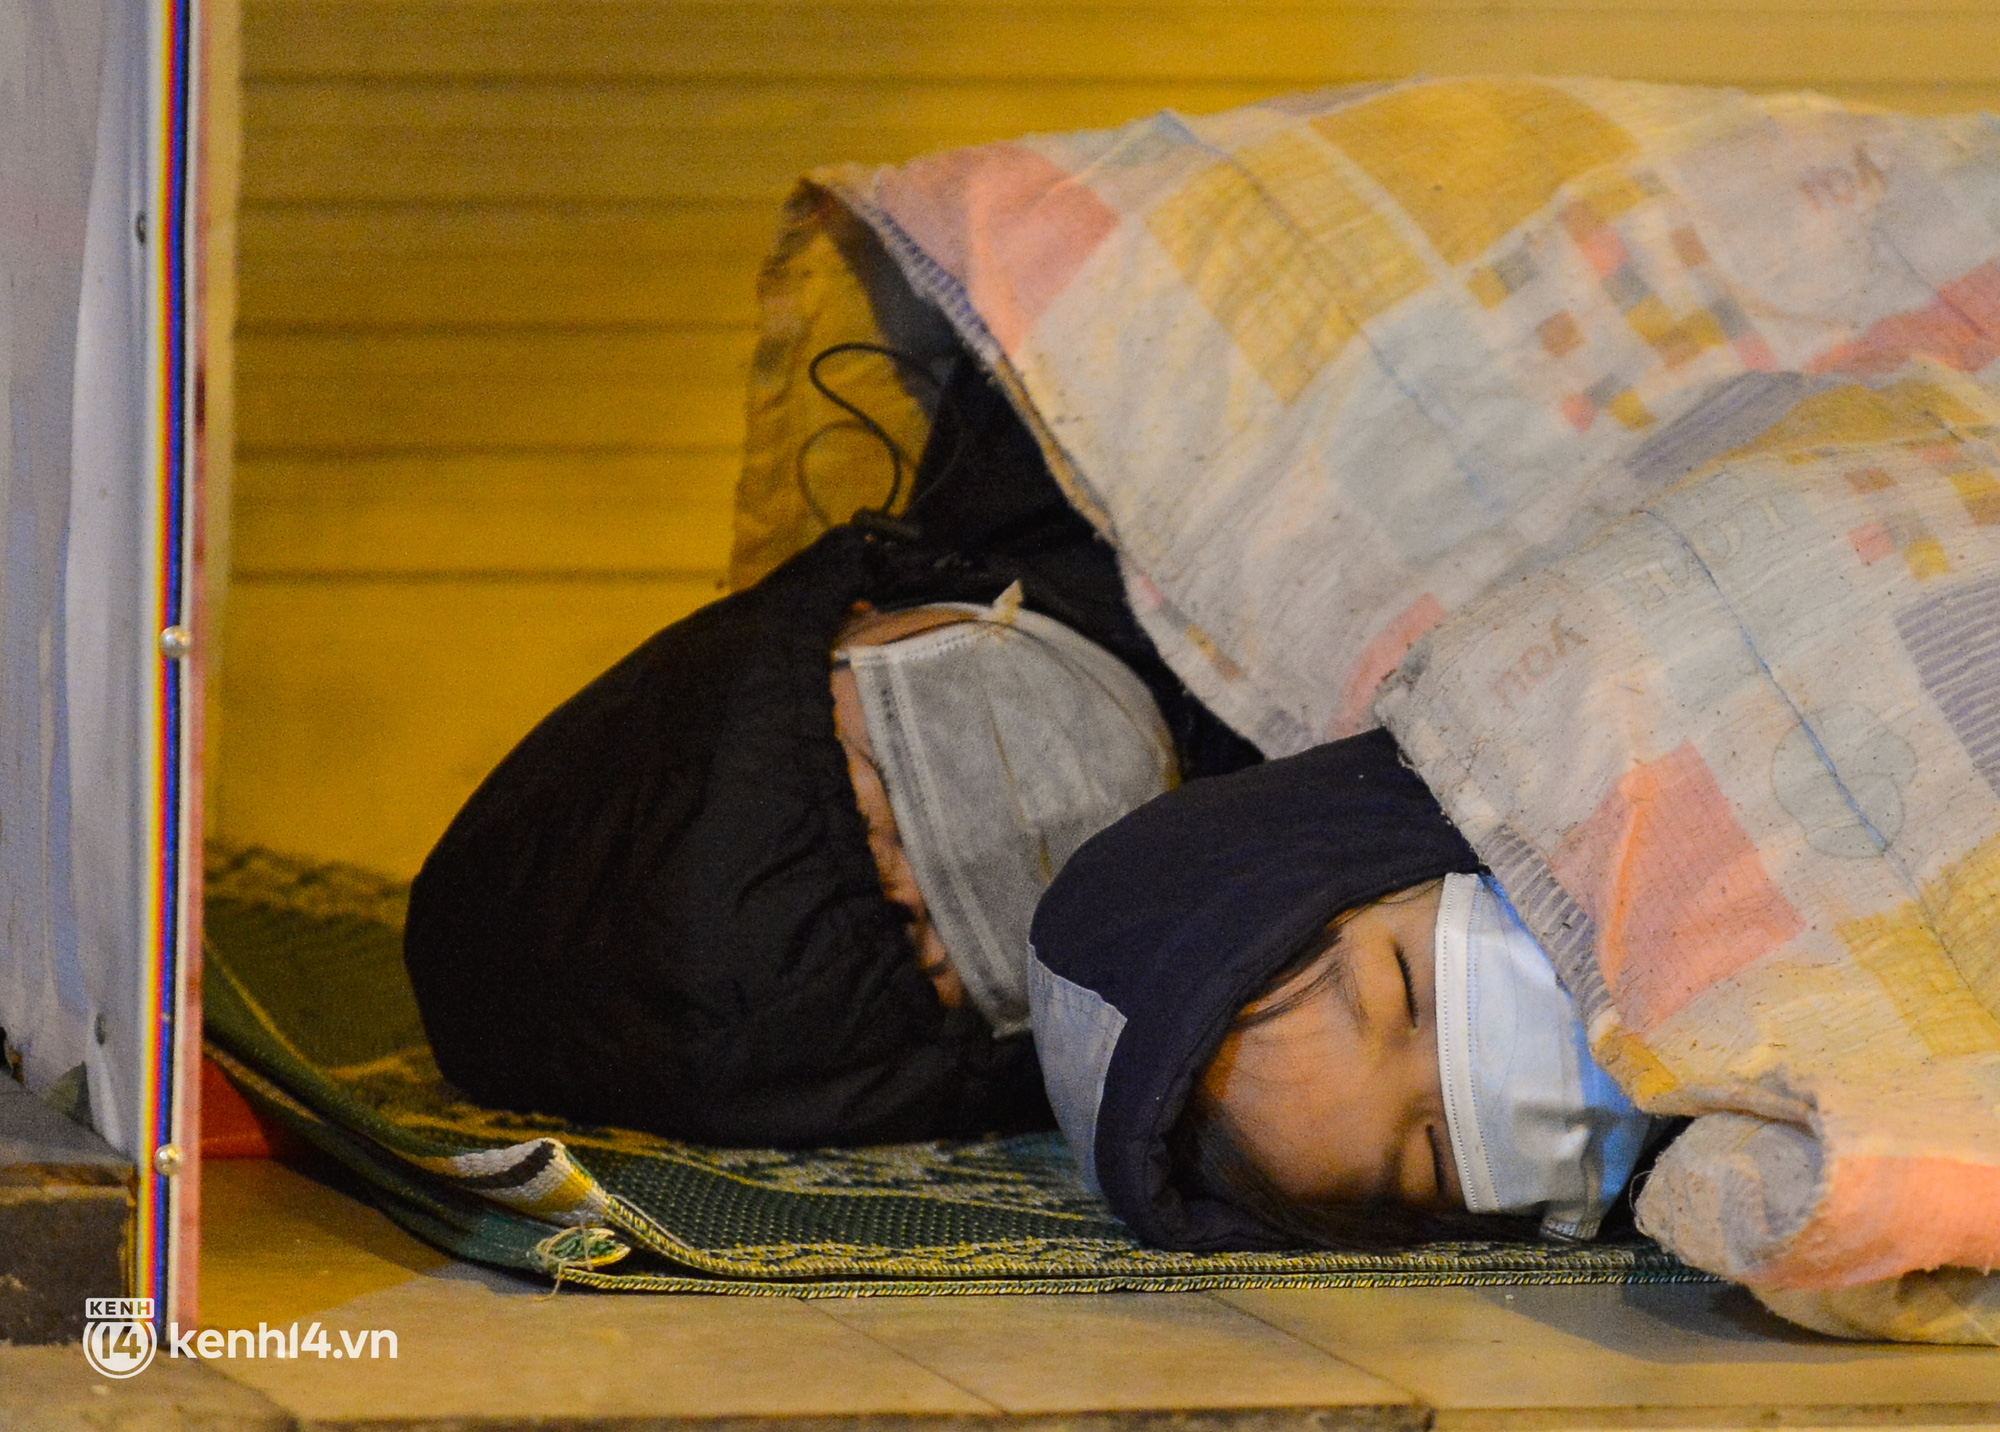 Xót xa cảnh con gái 6 tuổi theo mẹ ngủ vỉa hè dưới cái lạnh 12 độ ở Hà Nội: Lo cho con nhưng chẳng biết làm thế nào - Ảnh 5.